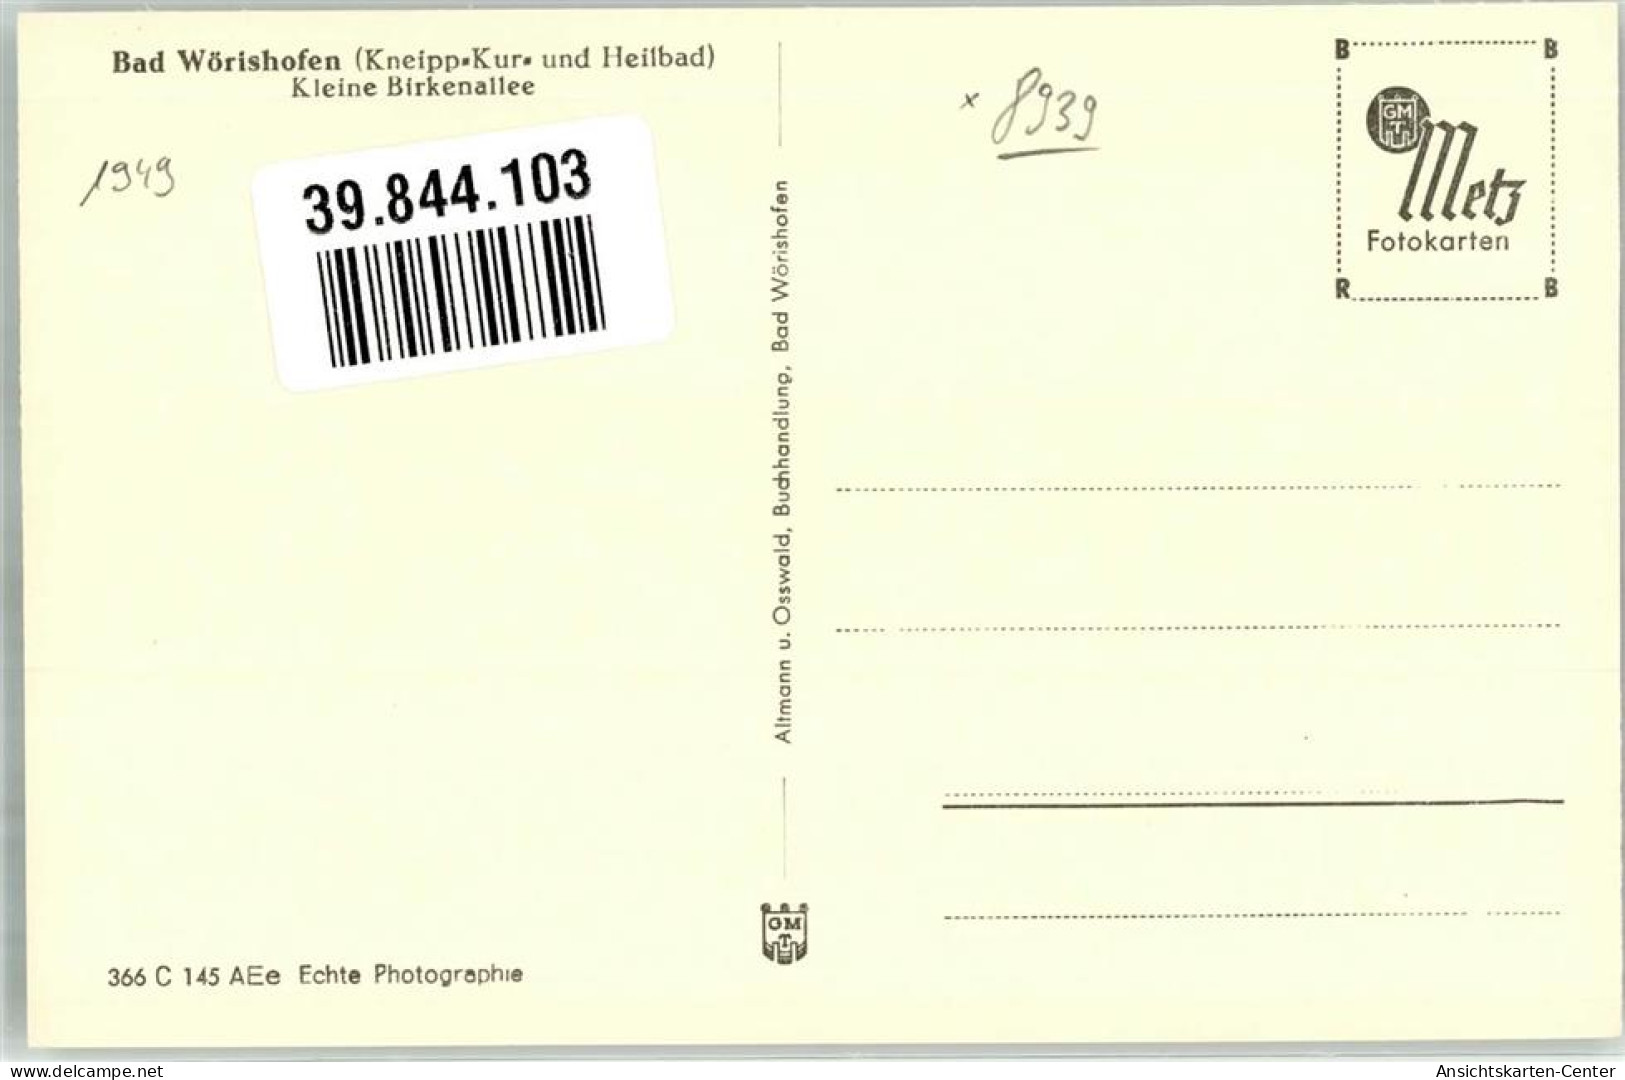 39844103 - Bad Woerishofen - Bad Woerishofen